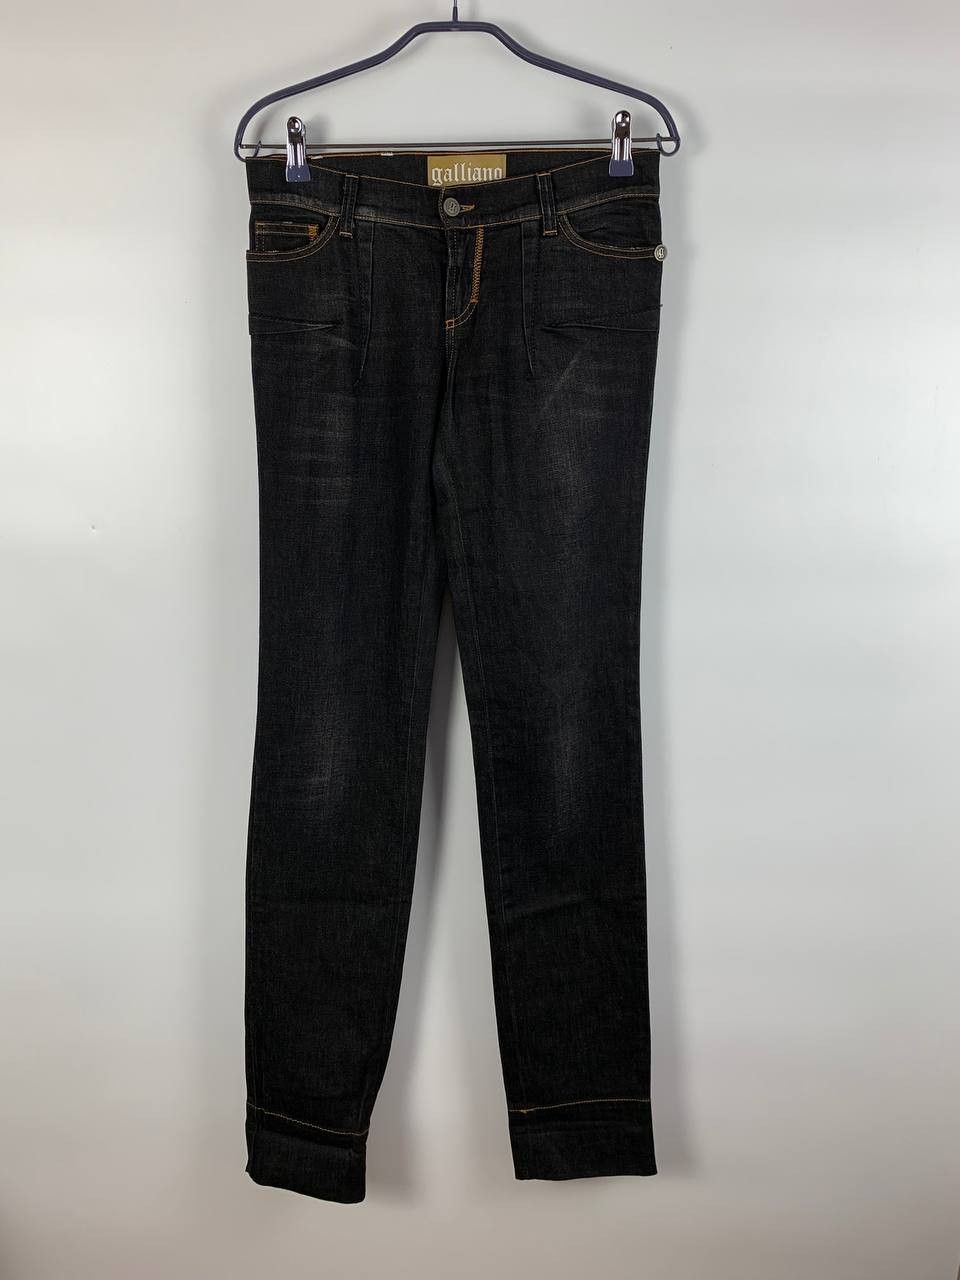 Galliano Galliano jeans denim black 27 | Grailed